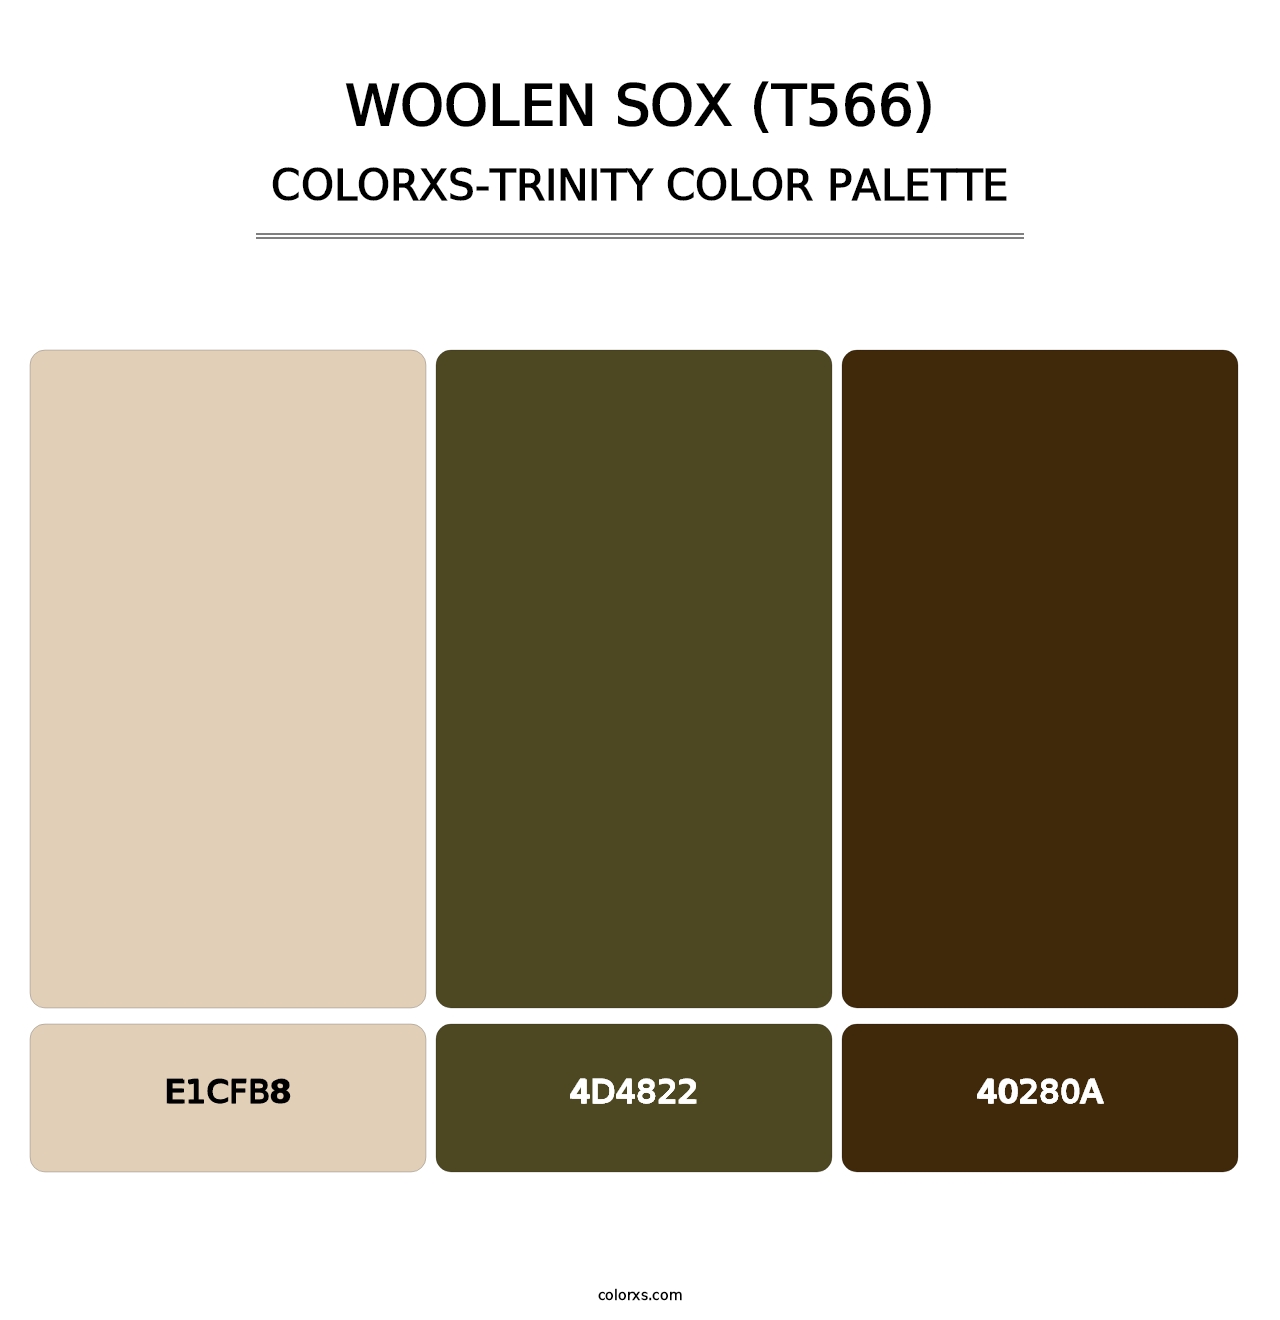 Woolen Sox (T566) - Colorxs Trinity Palette